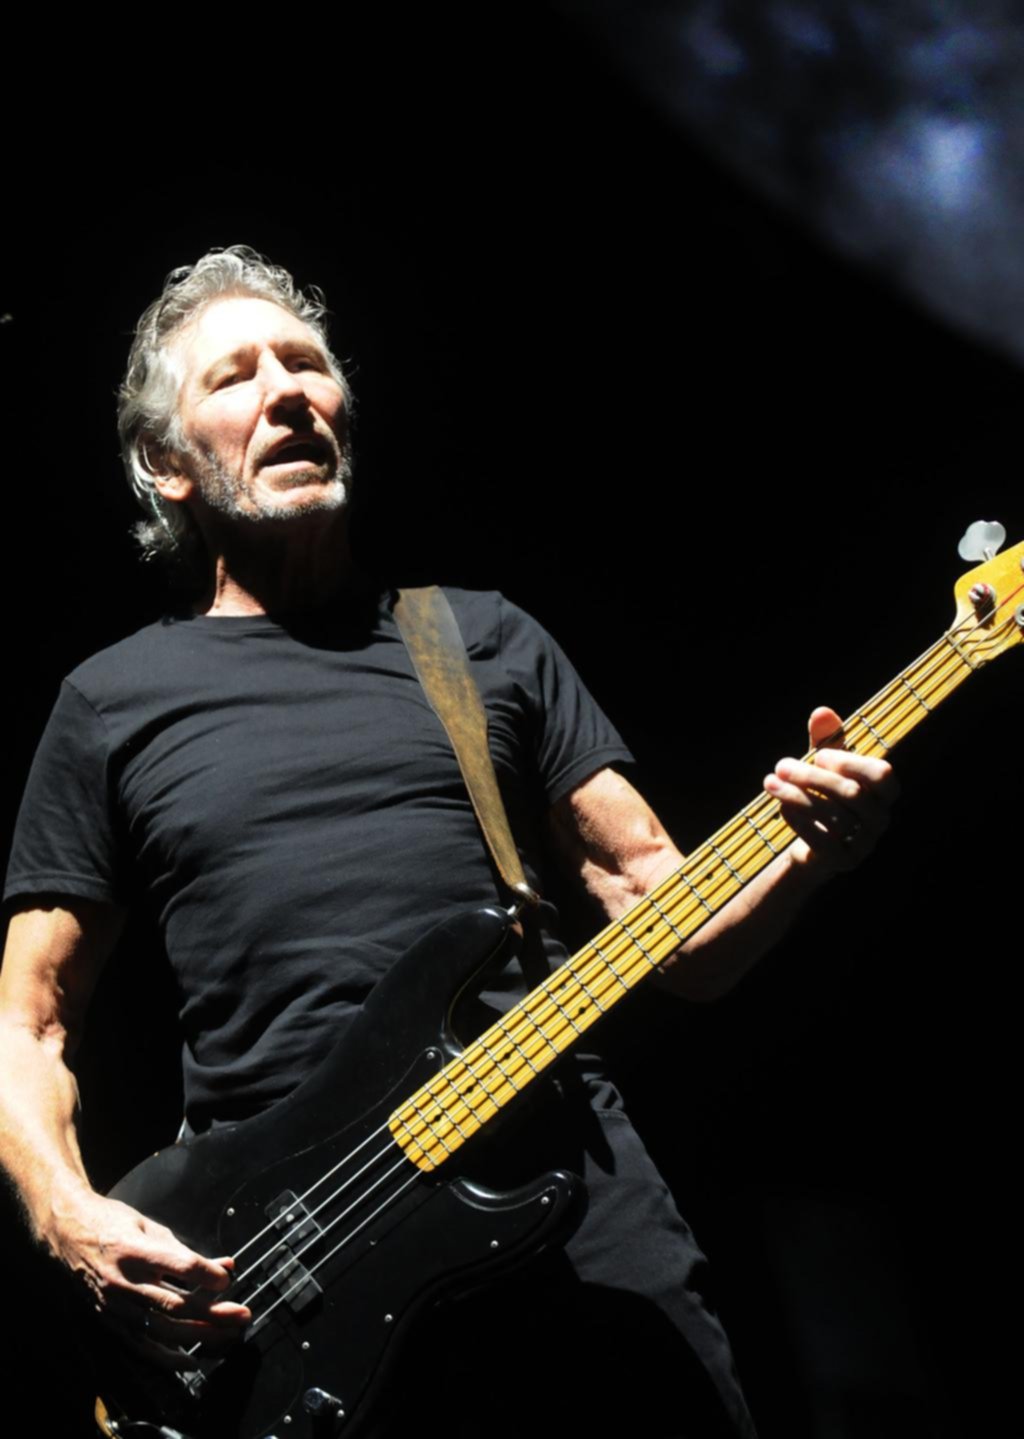 El armado del escenario ya pone en la cuenta regresiva el show de Roger Waters en La Plata